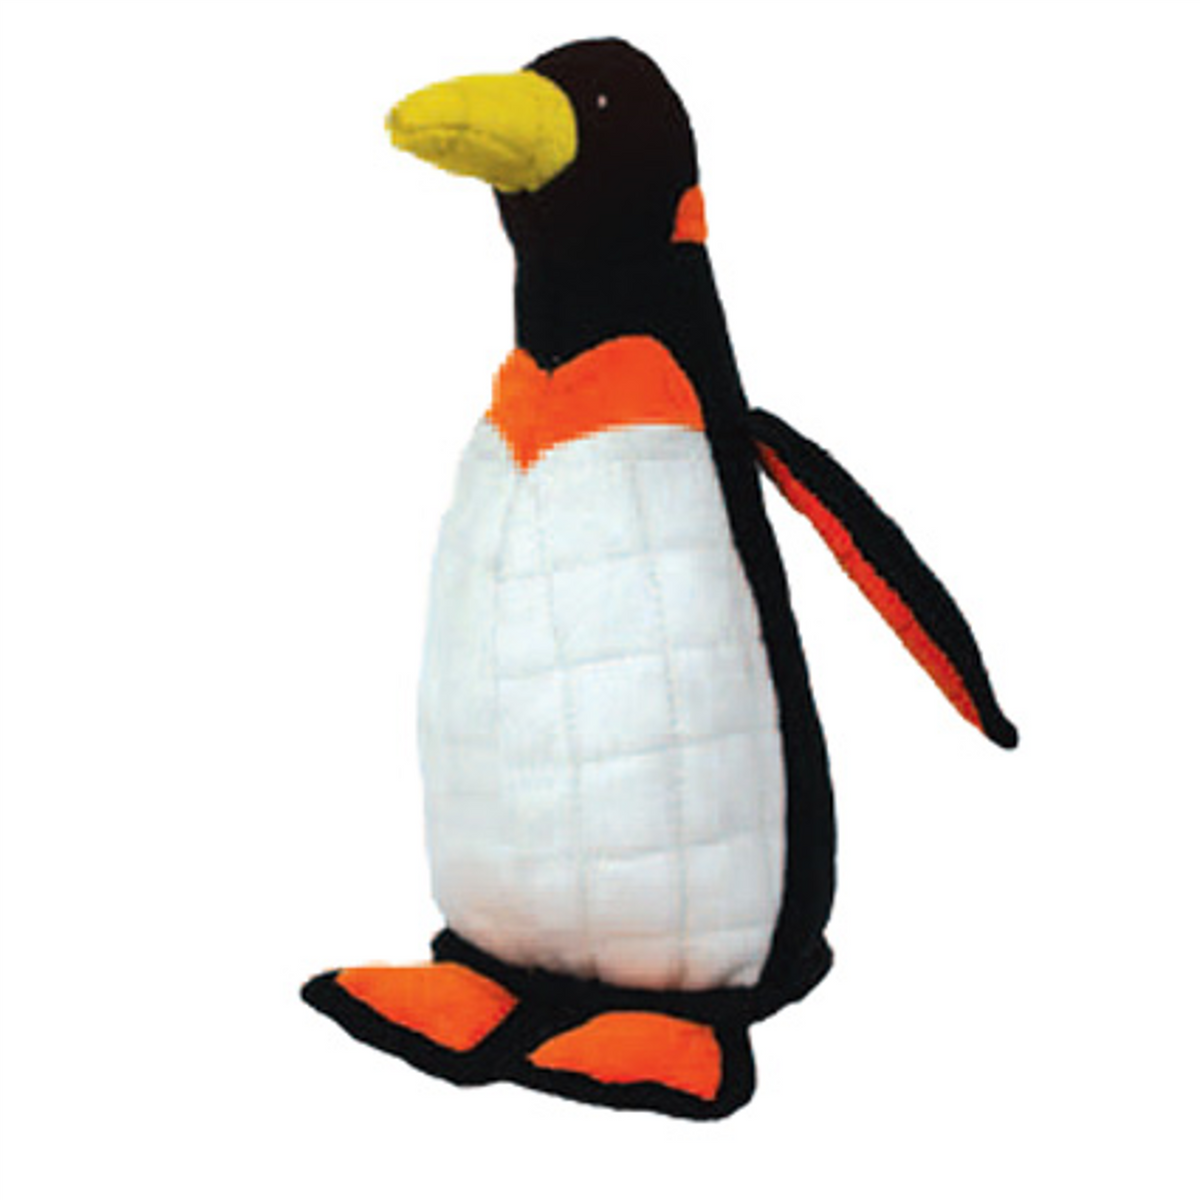 Tuffy Zoo Series - Peabody Penguin Tough Toy